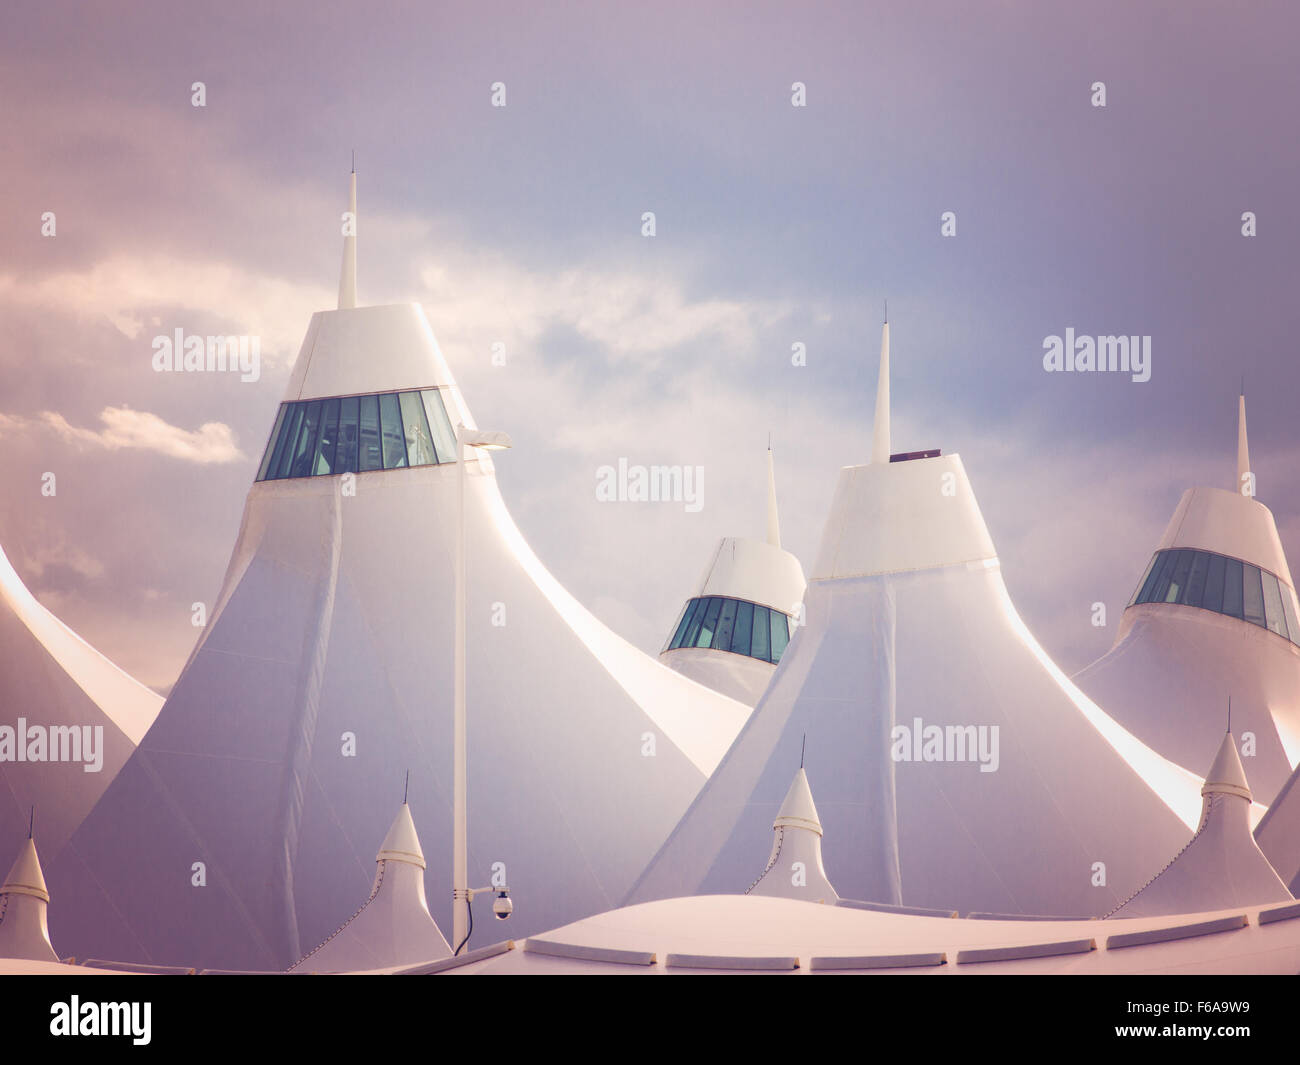 Denver International Airport bekannt für Spitzen Dach. Konstruktion des Daches spiegelt die schneebedeckten Berge. Stockfoto